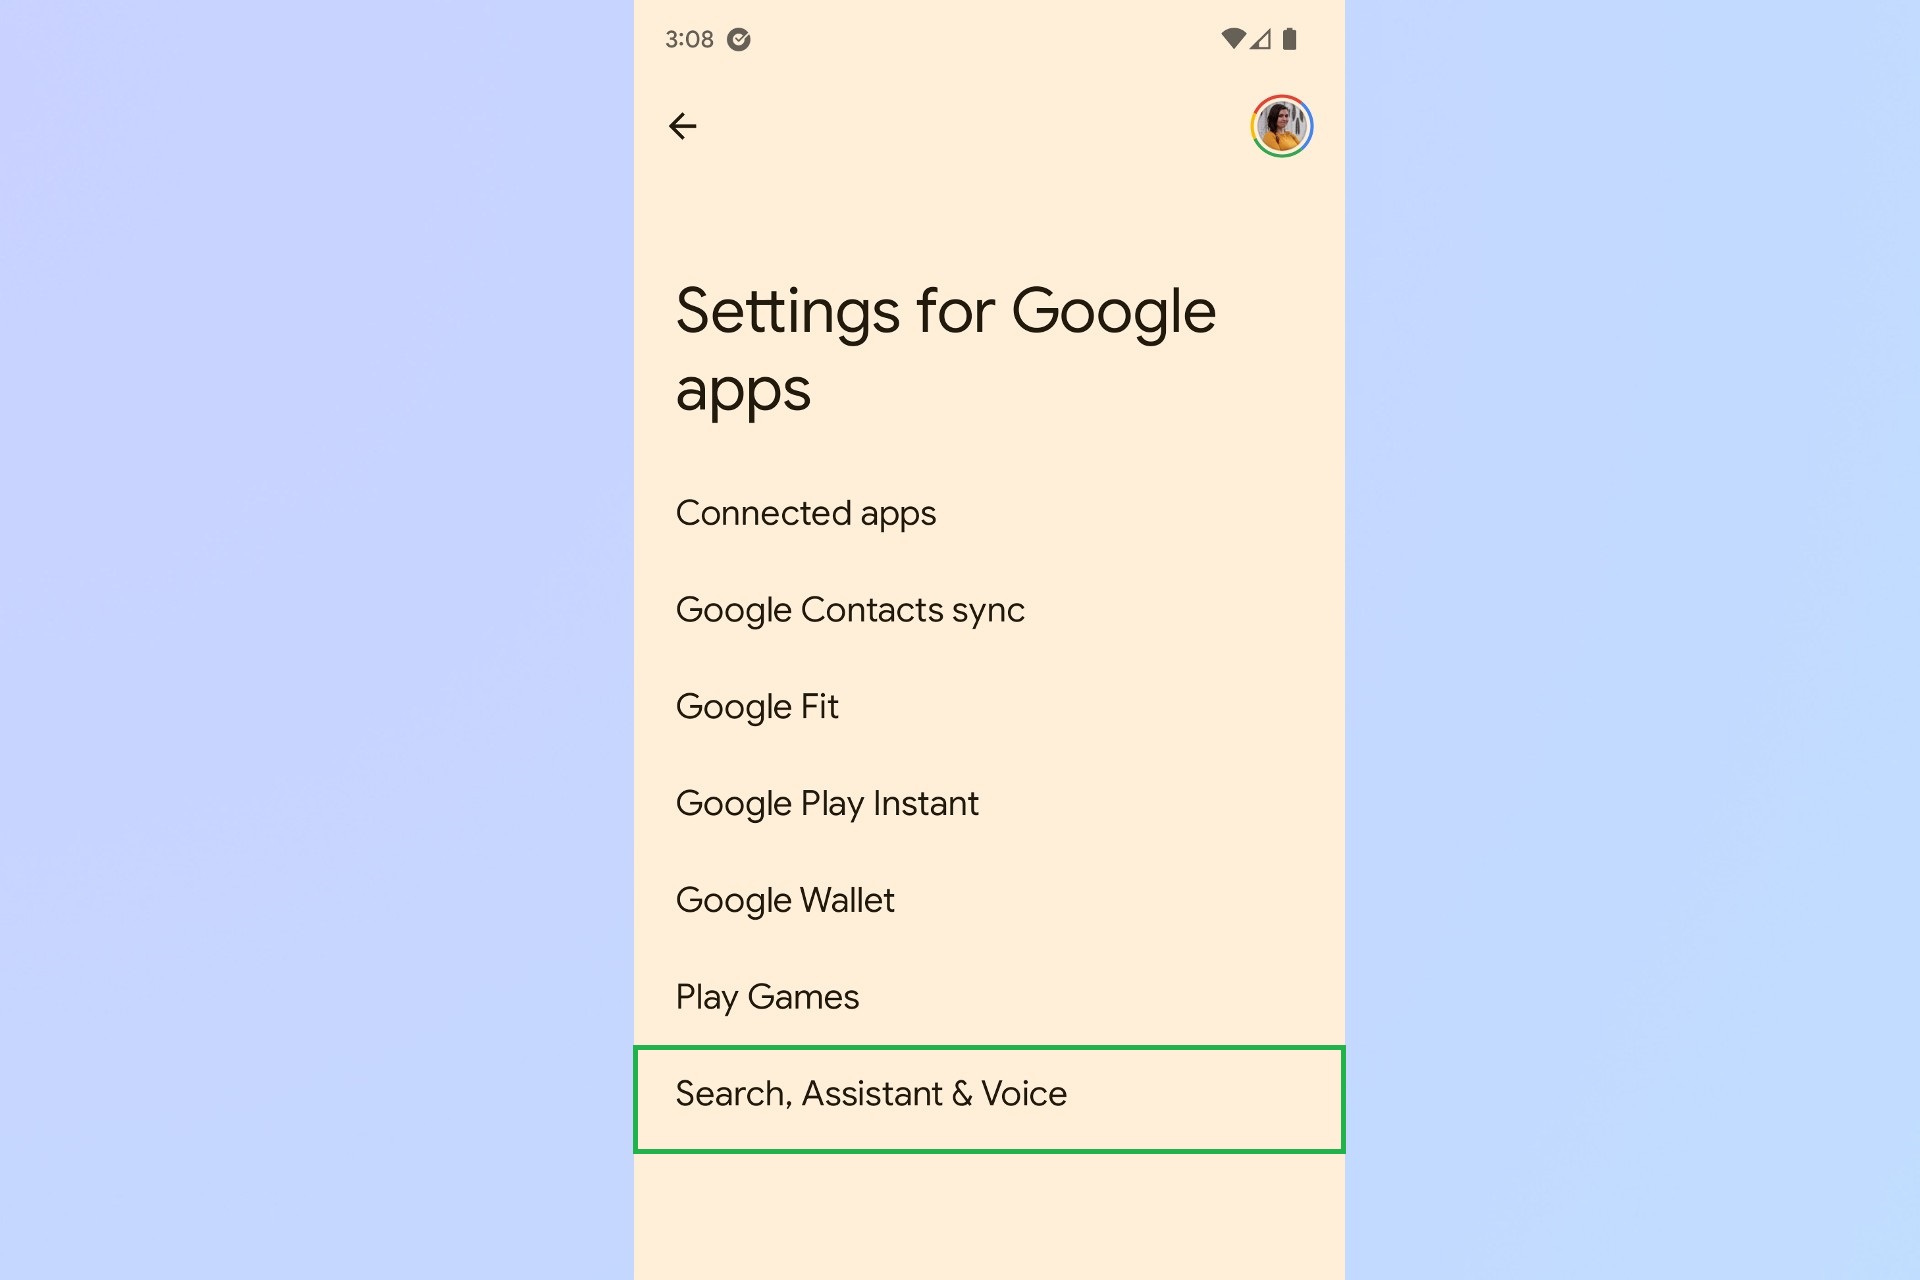 Скриншот меню настроек приложений Google, где Поиск, Ассистент и Голос выделены зеленым квадратом.